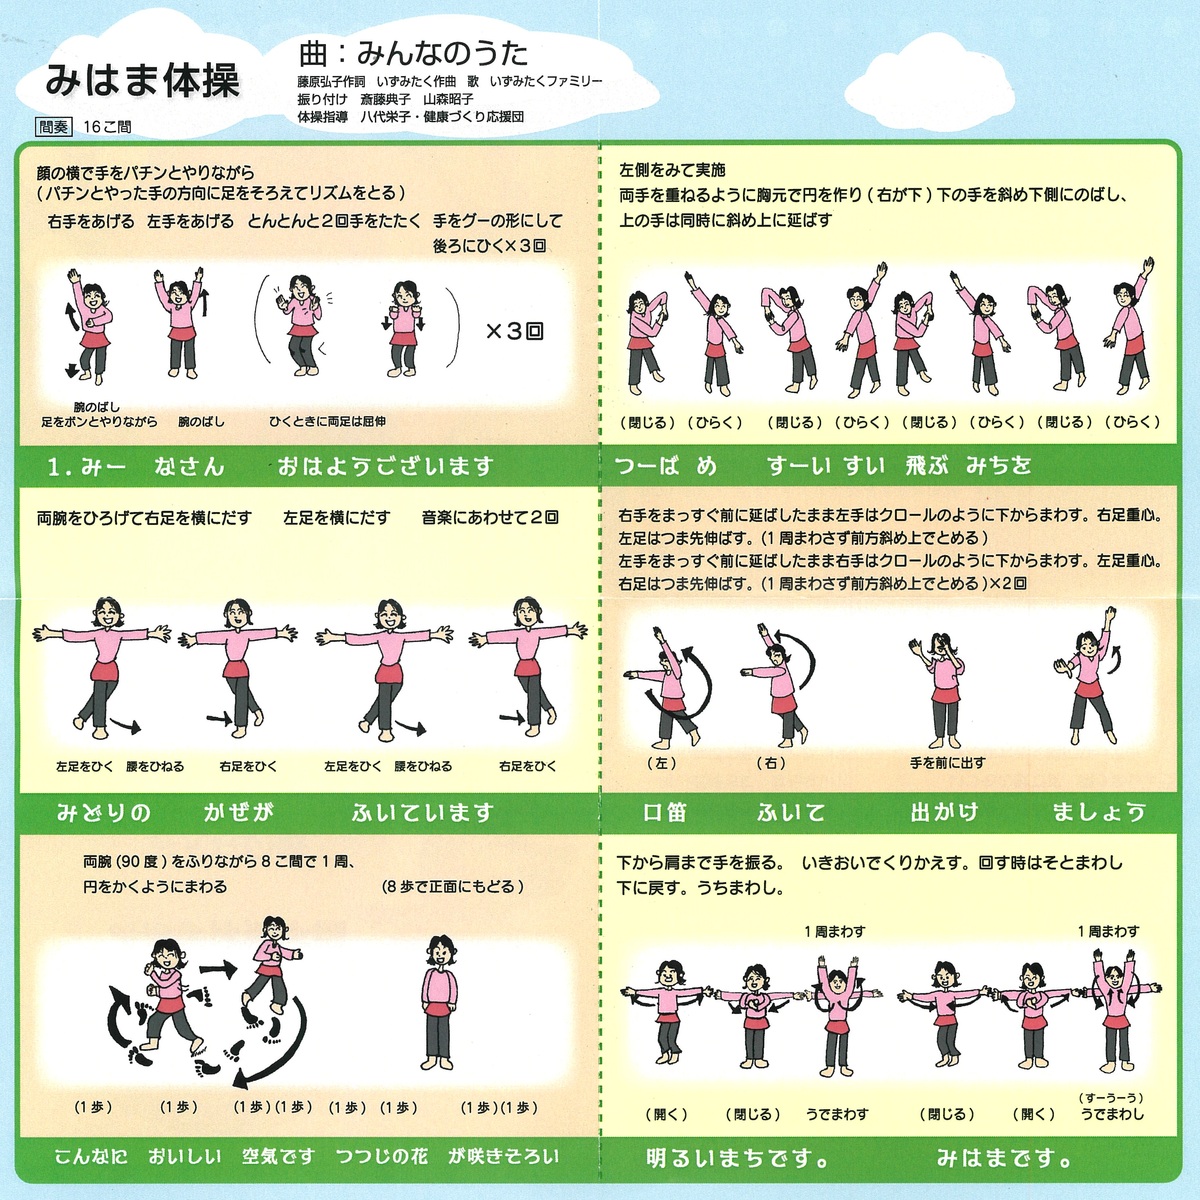 「けんこっちゃま」と「みはま体操」で健康づくりを応援中 愛知県美浜町